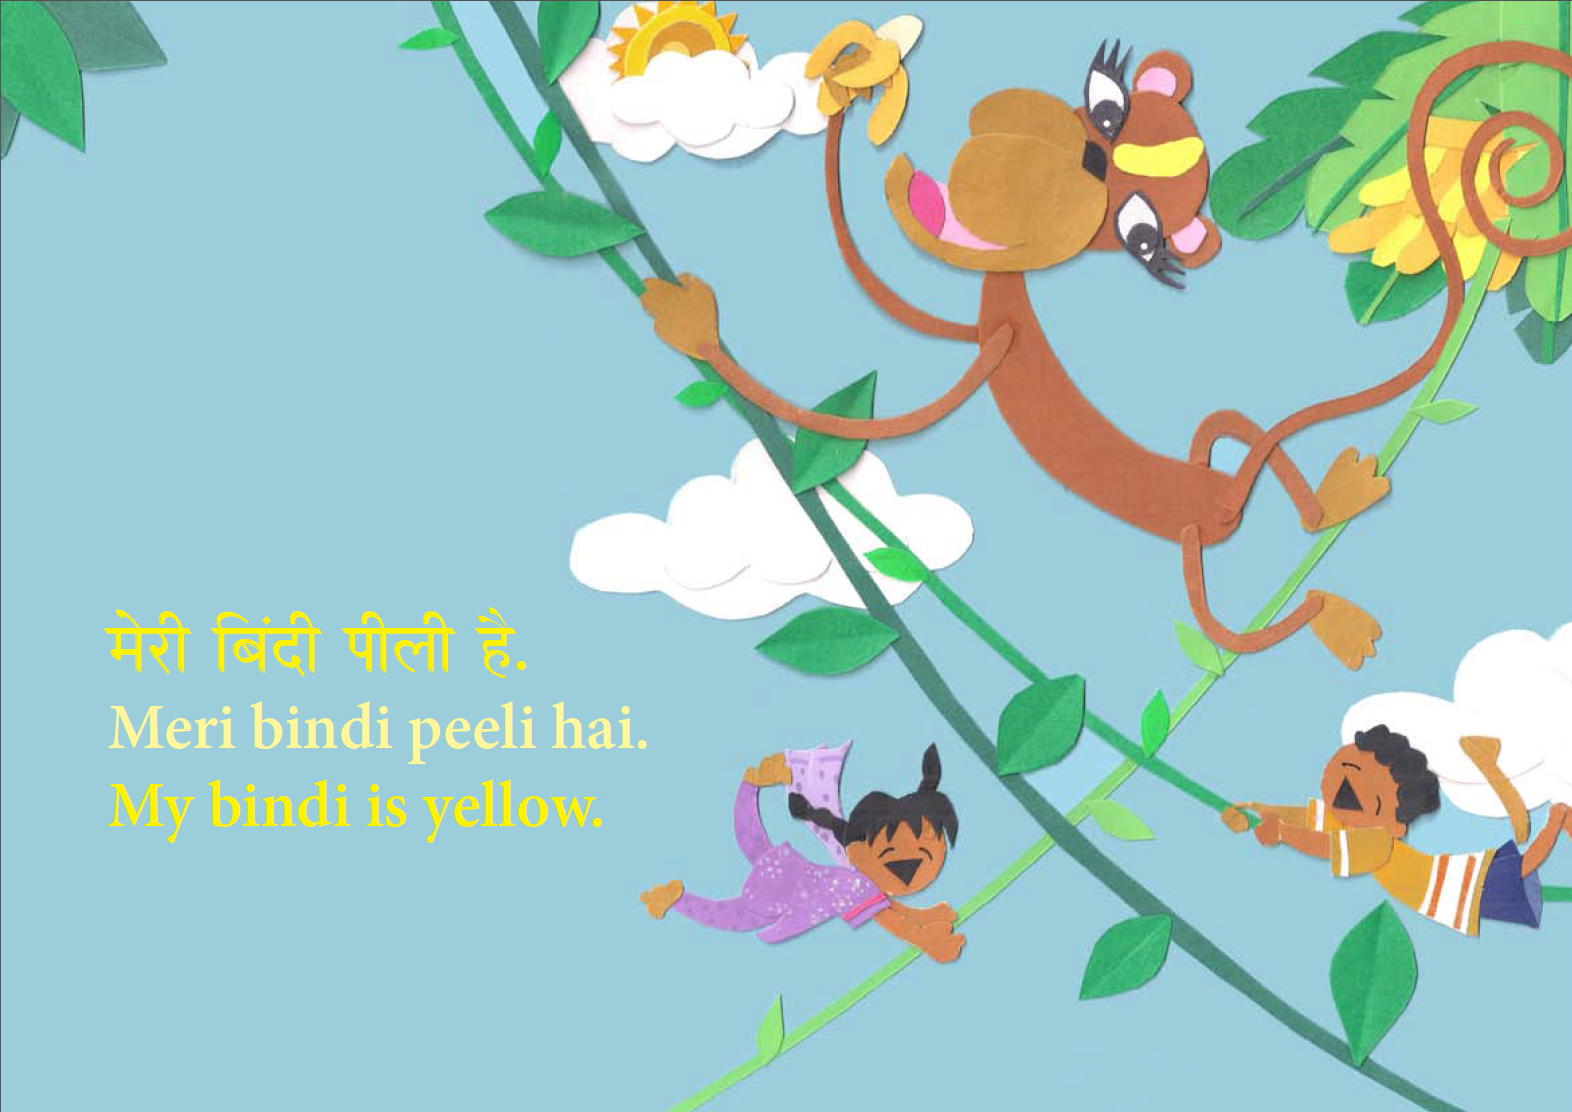 Meri Bindi: A Hindi English Bilingual Picture Book - BhashaKids. Hindi English book. Hindi English picture book. Hindi English Children's book.